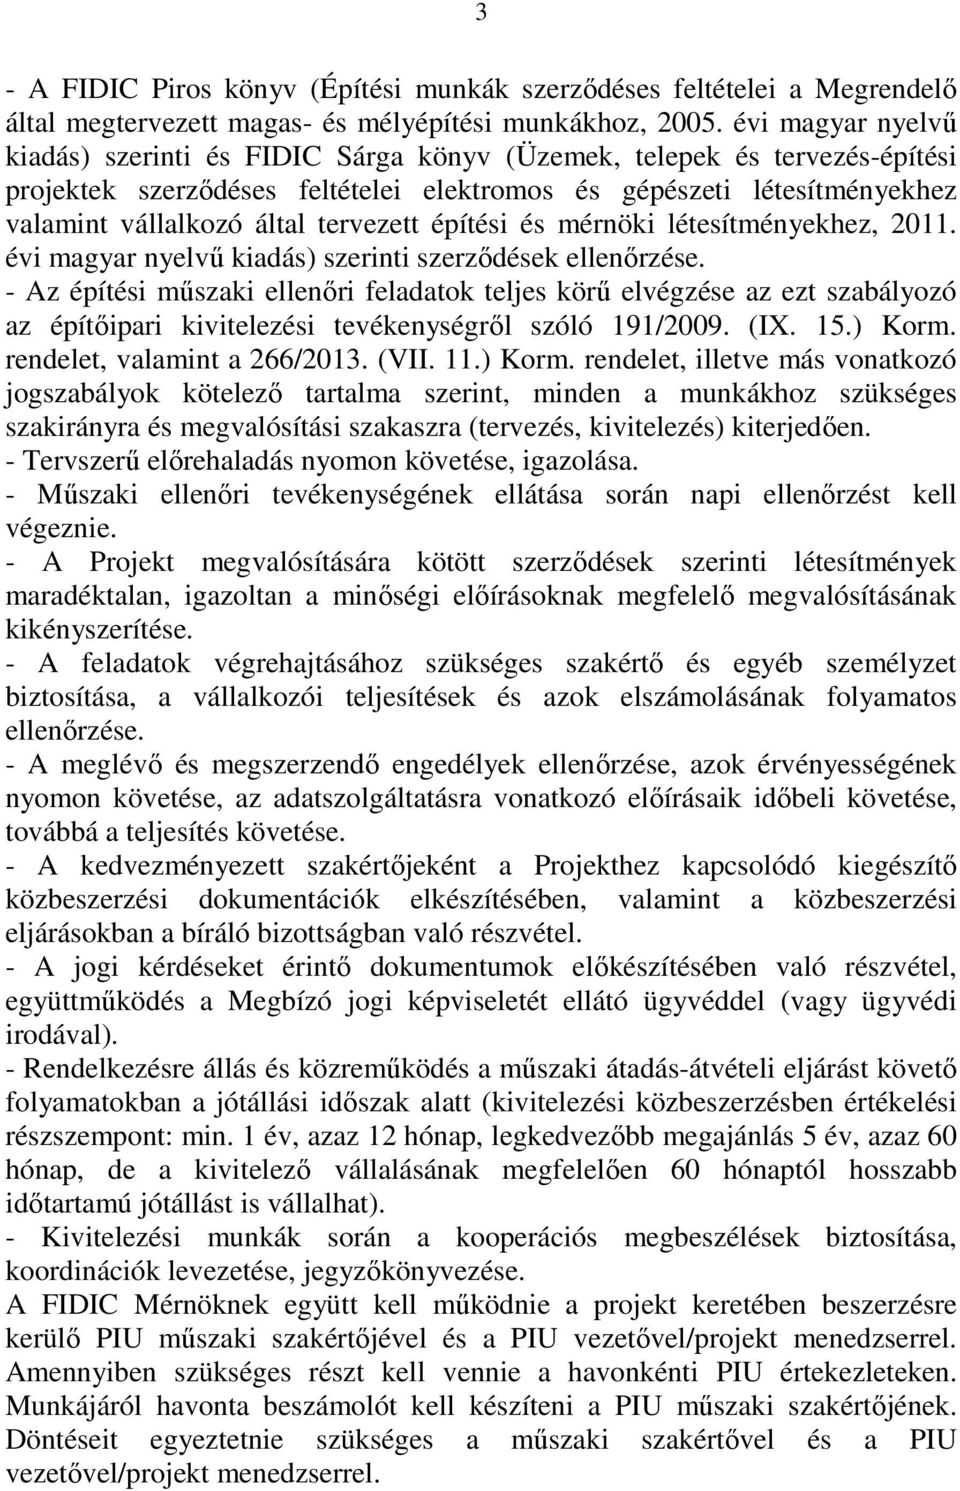 tervezett építési és mérnöki létesítményekhez, 2011. évi magyar nyelvű kiadás) szerinti szerződések ellenőrzése.